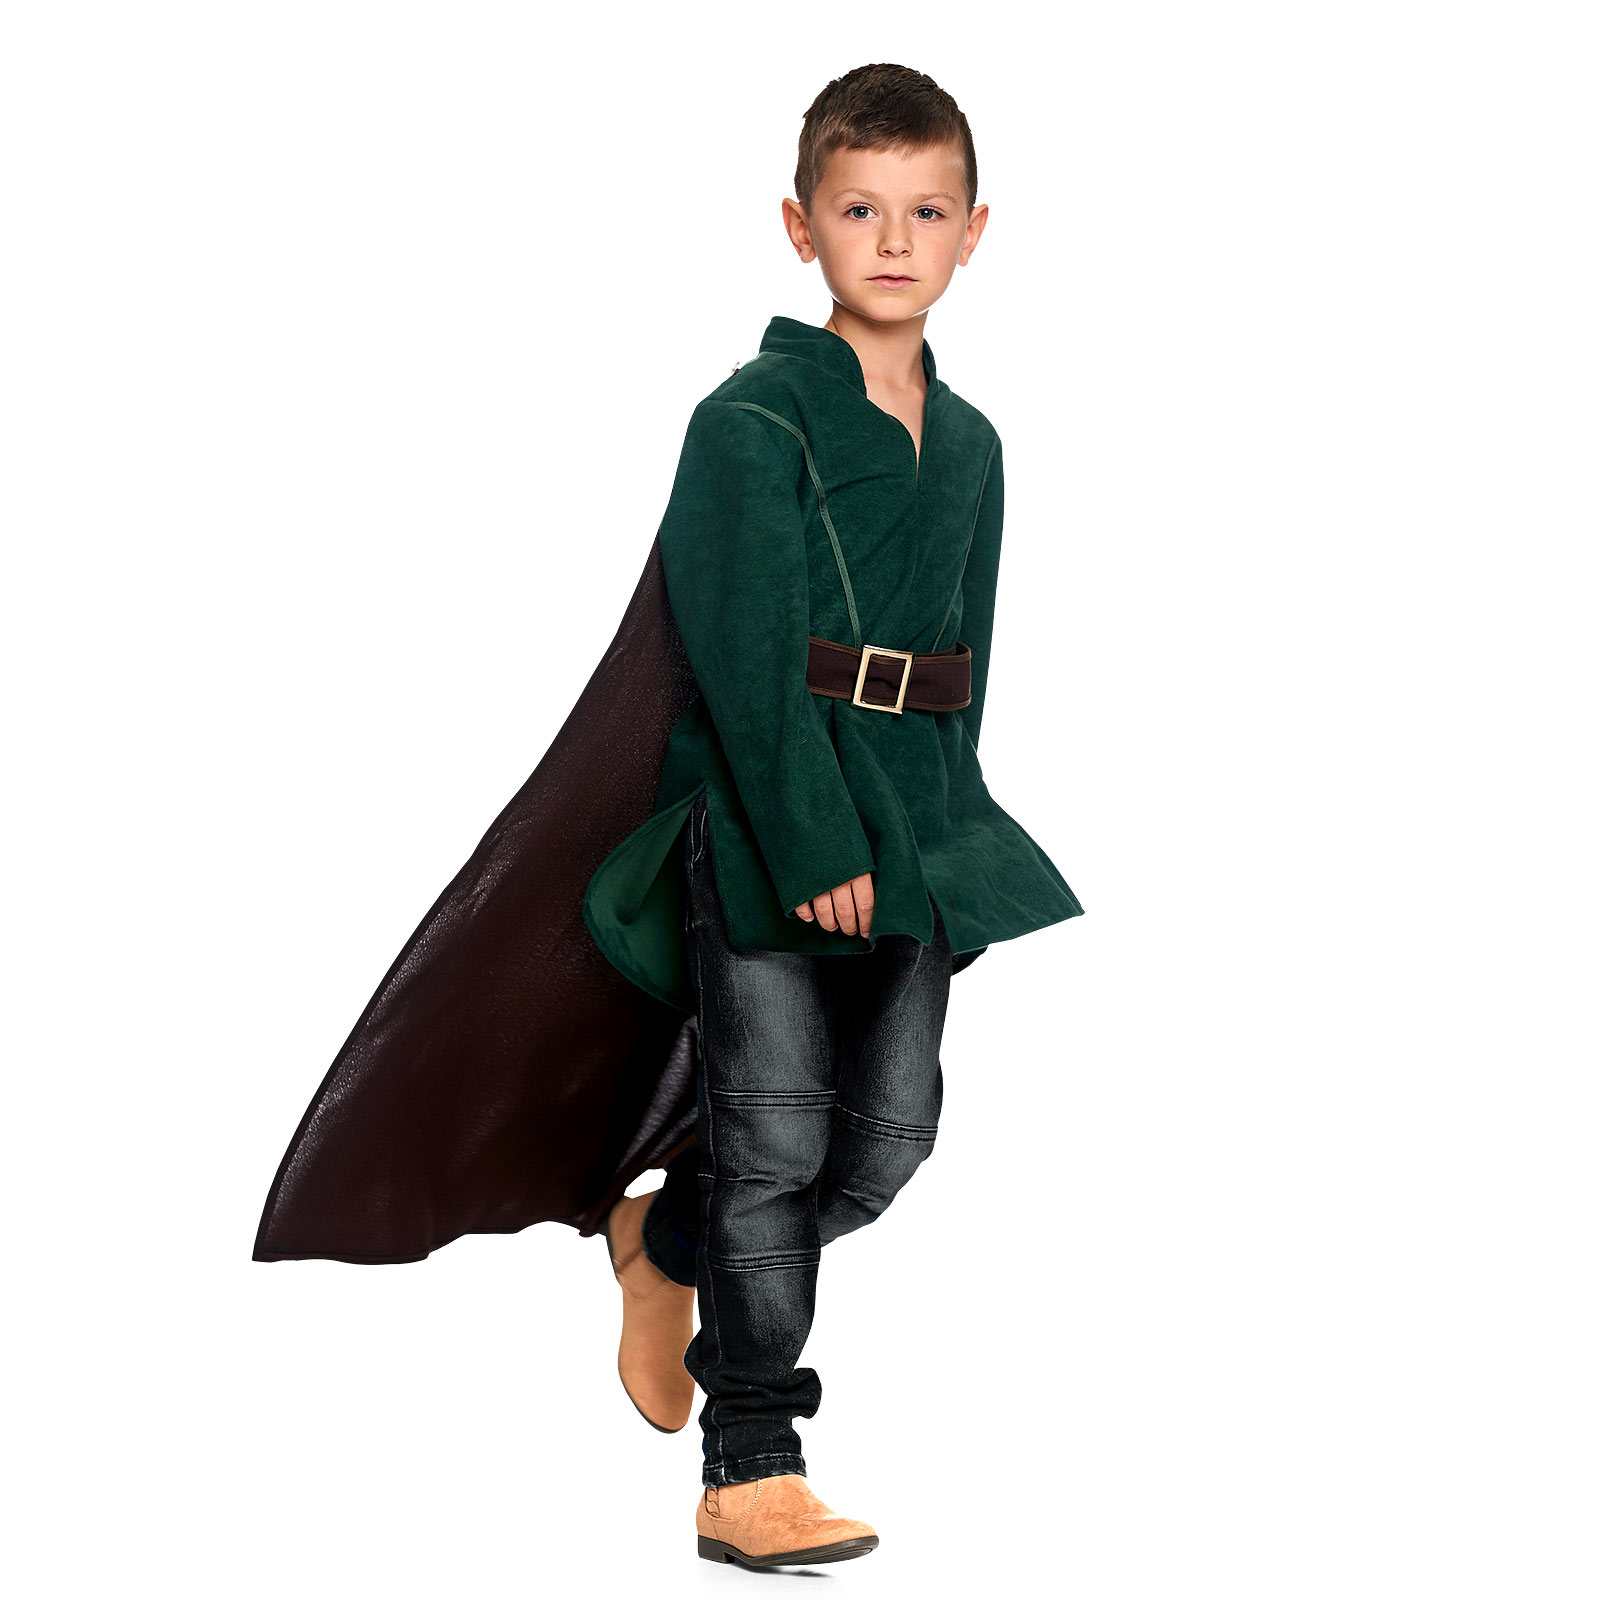 Legolas Kinder Kostüm mit Cape für Herr der Ringe Fans